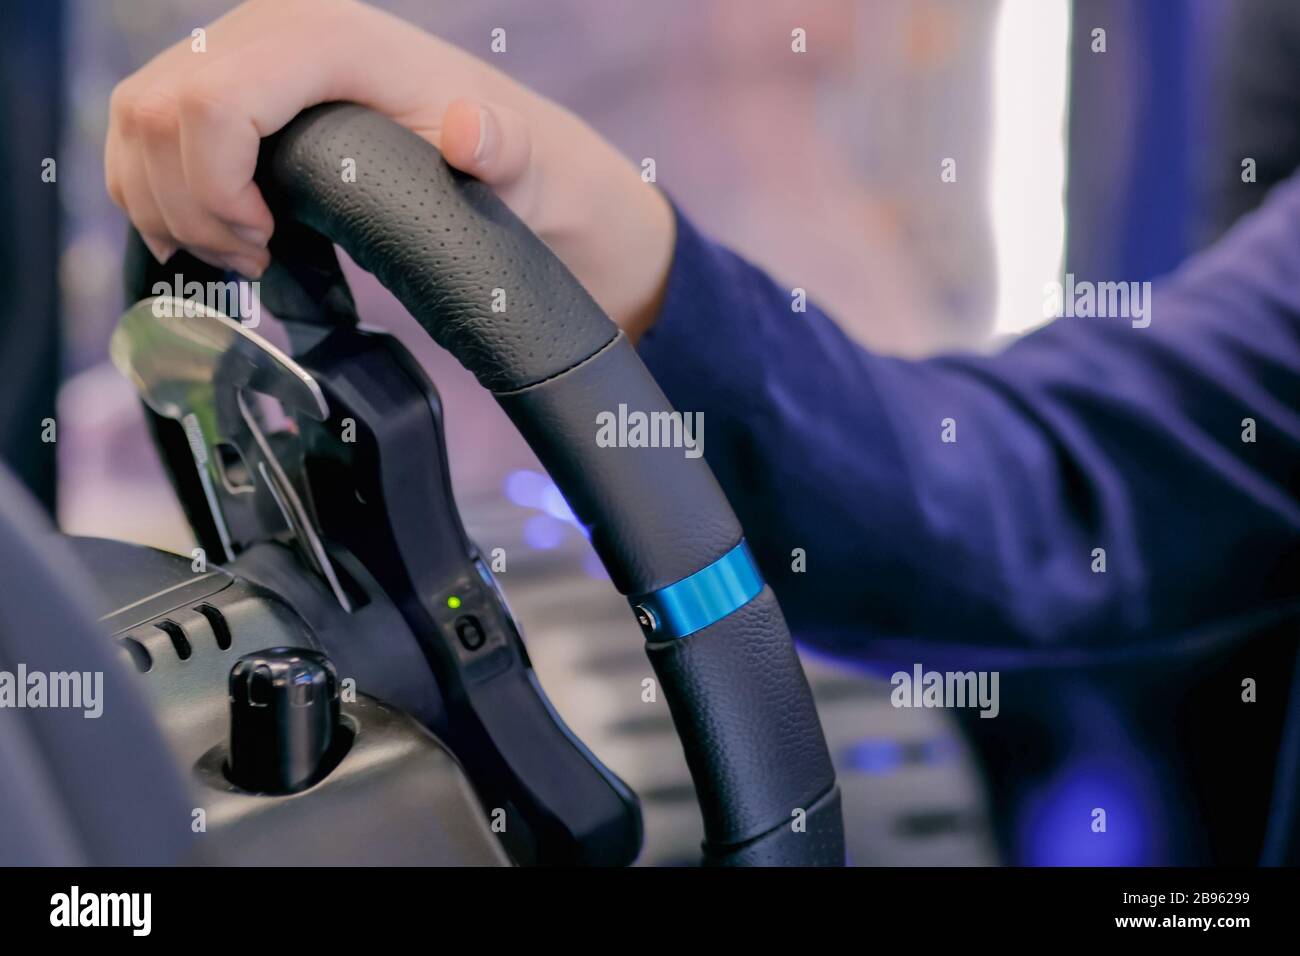 Hombre utilizando juegos joystick al volante TECHNOLOGY EXHIBITION Foto de stock